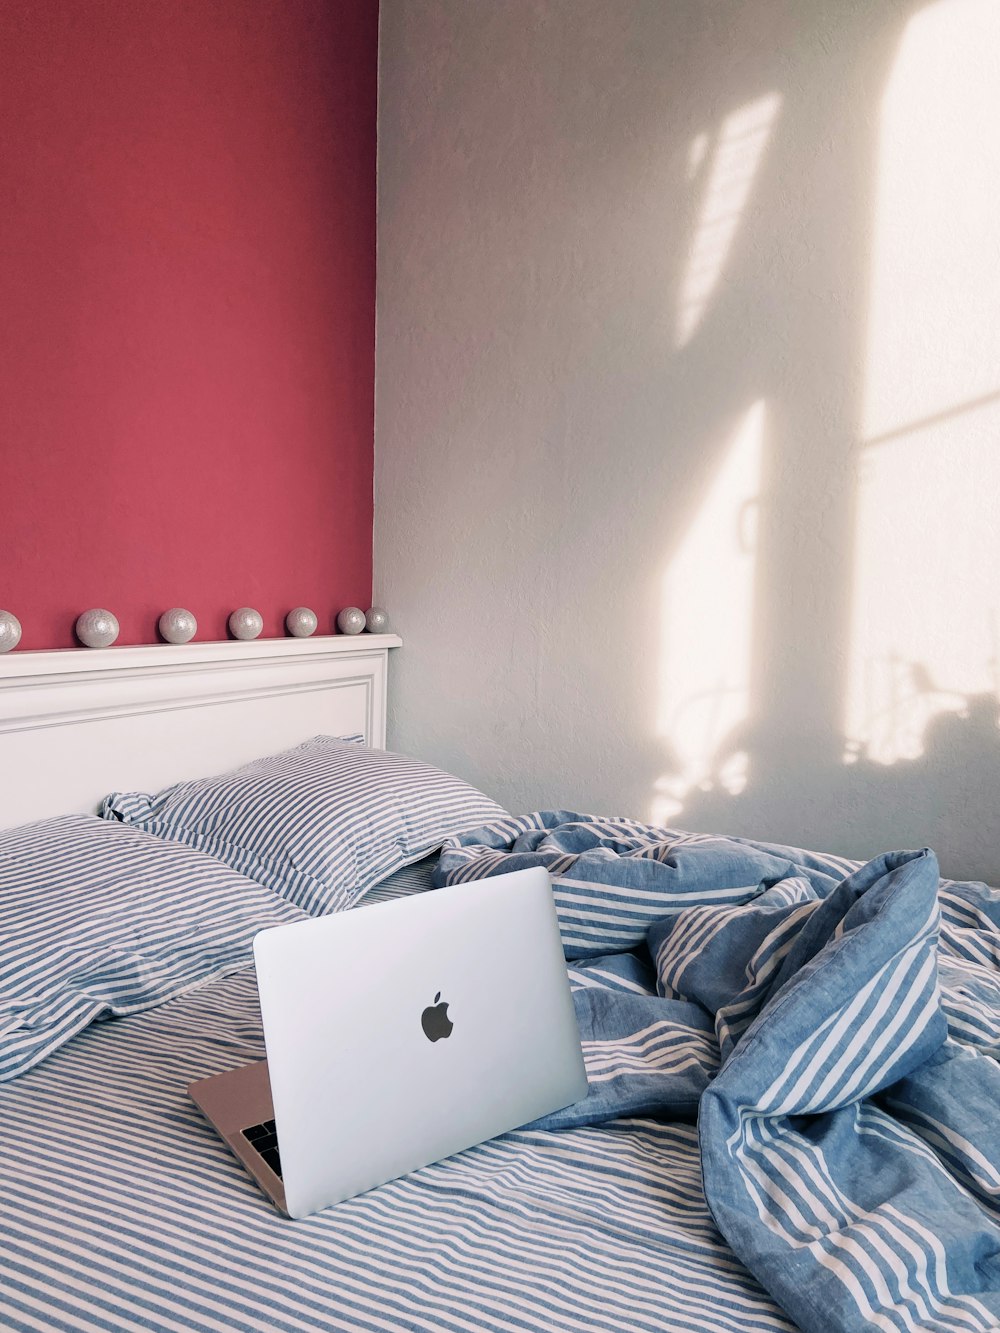 MacBook argento su biancheria da letto blu e bianca